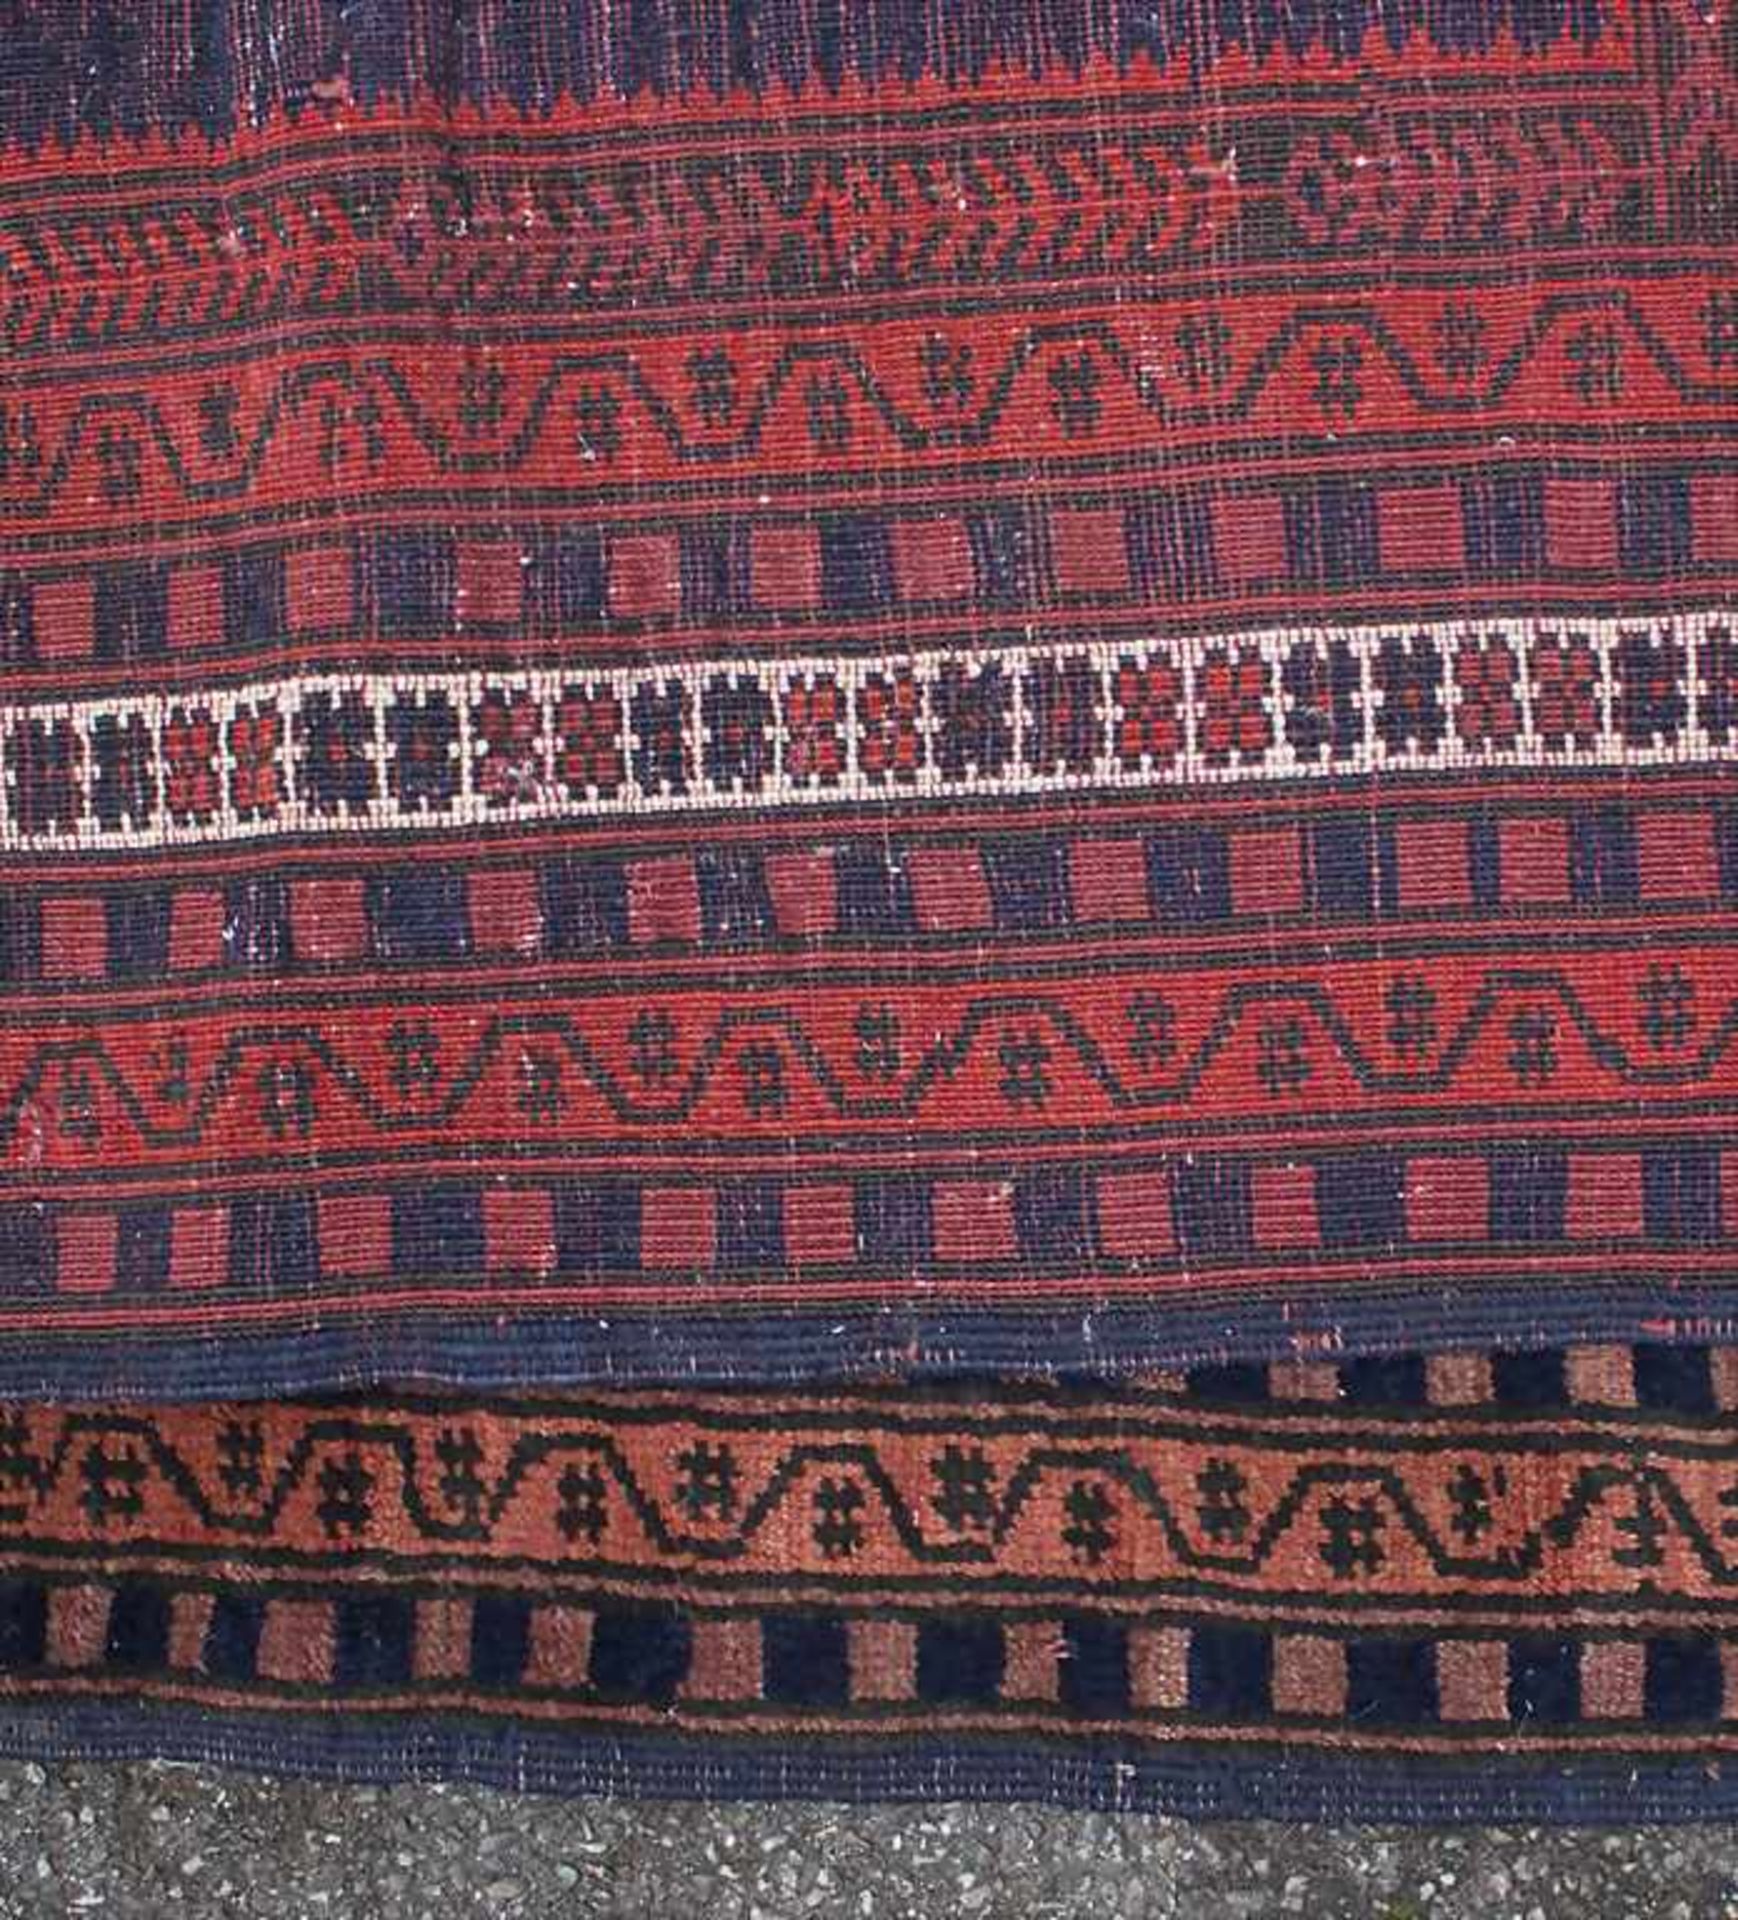 Orientteppich / An oriental carpetMaterial: Wolle auf Baumwolle, Naturfarben, Maße: 160 x 110 cm, - Bild 3 aus 4